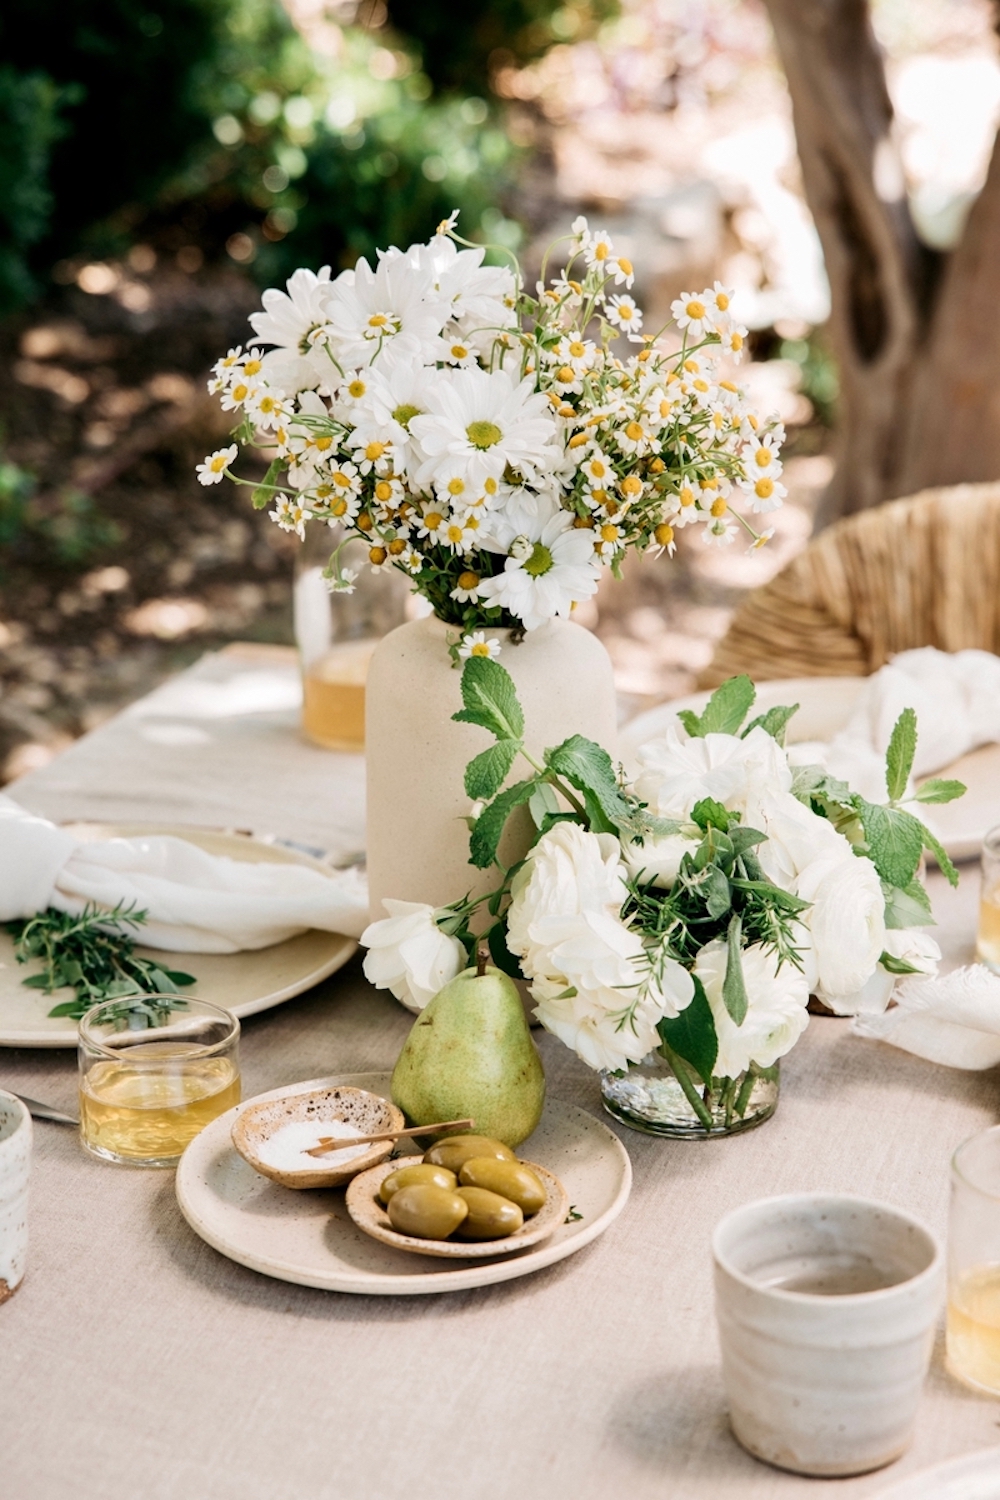 Mesa primaveral de exterior con mantel de lino rosa, centro de mesa con pequeños cuencos de sal, aceitunas y una pera verde, centro de mesa con una pequeña flor blanca y un jarrón de gres jaspeado con margaritas y flores blancas.